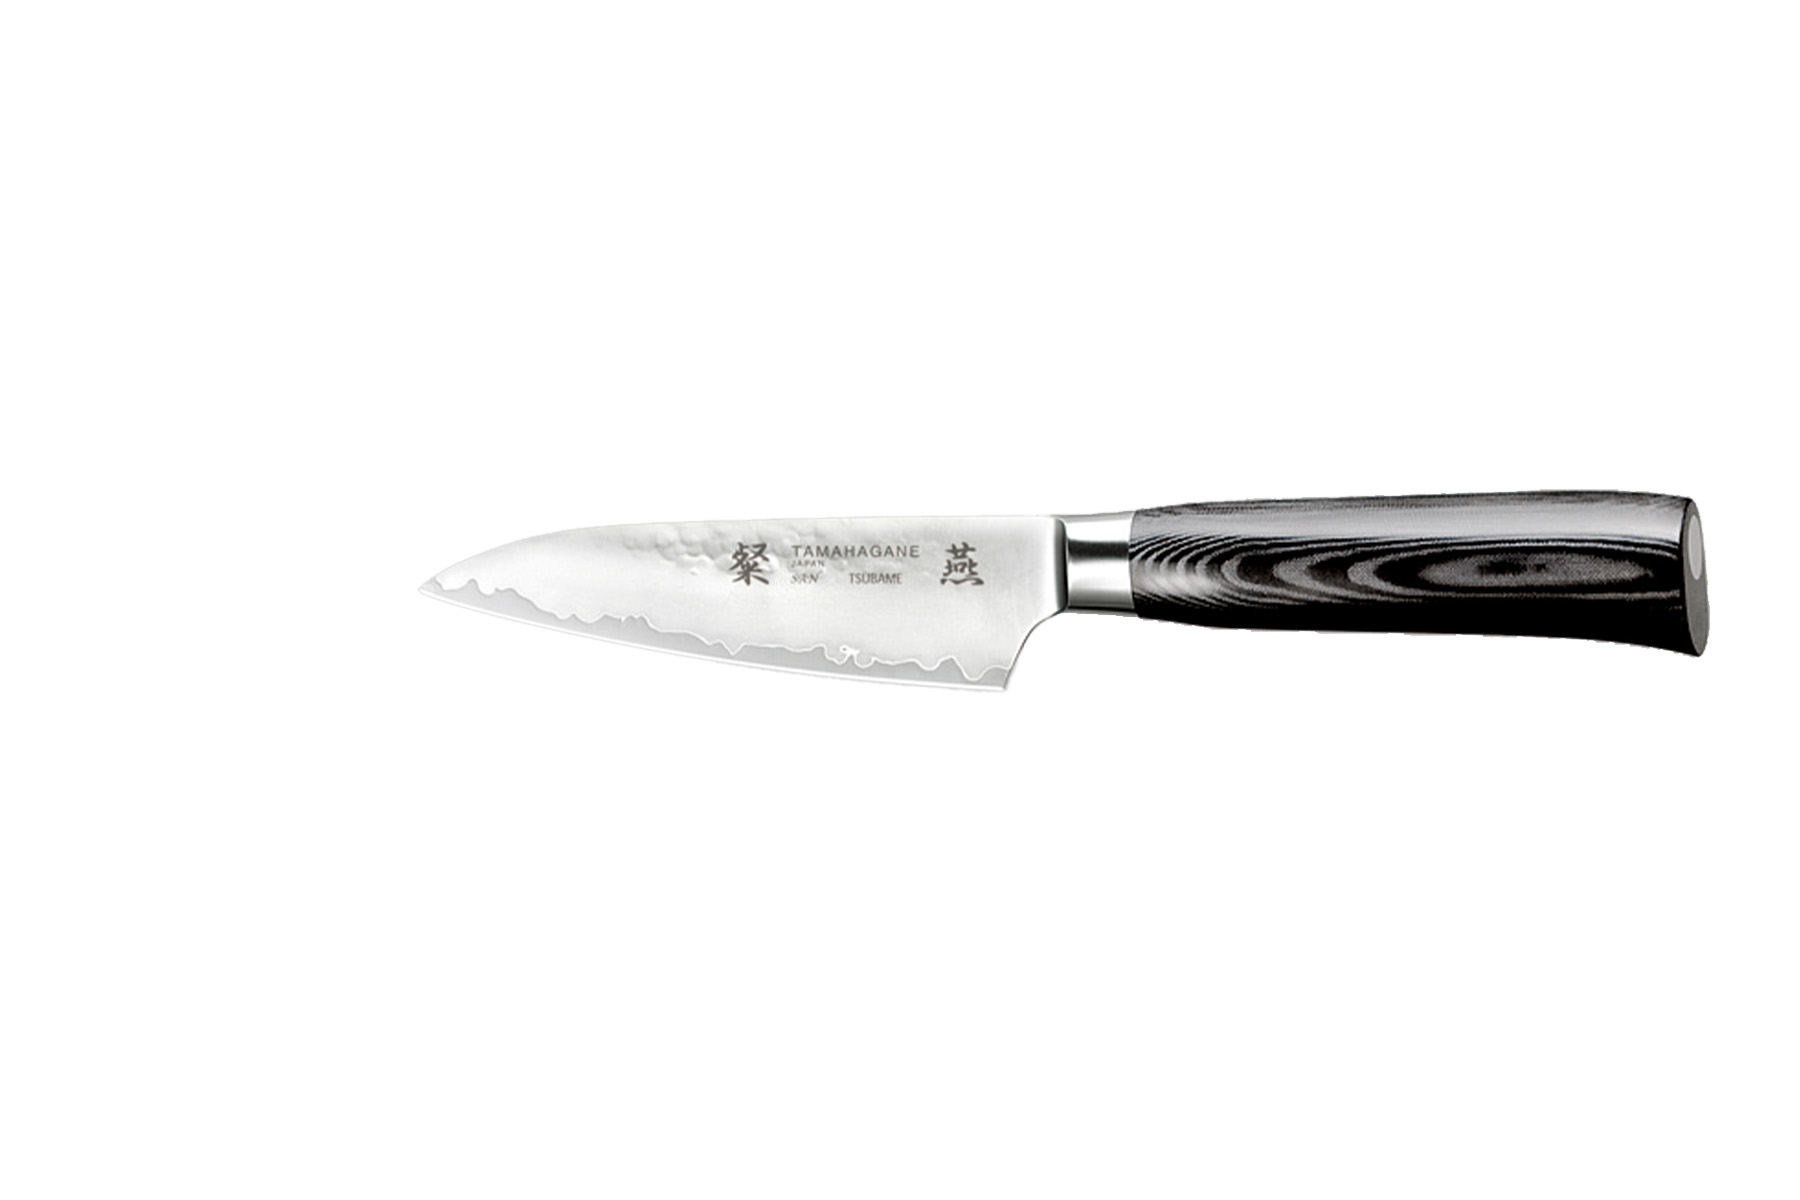 Couteau japonais Tamahagane Tsubame Hammered - Couteau d'office 9 cm